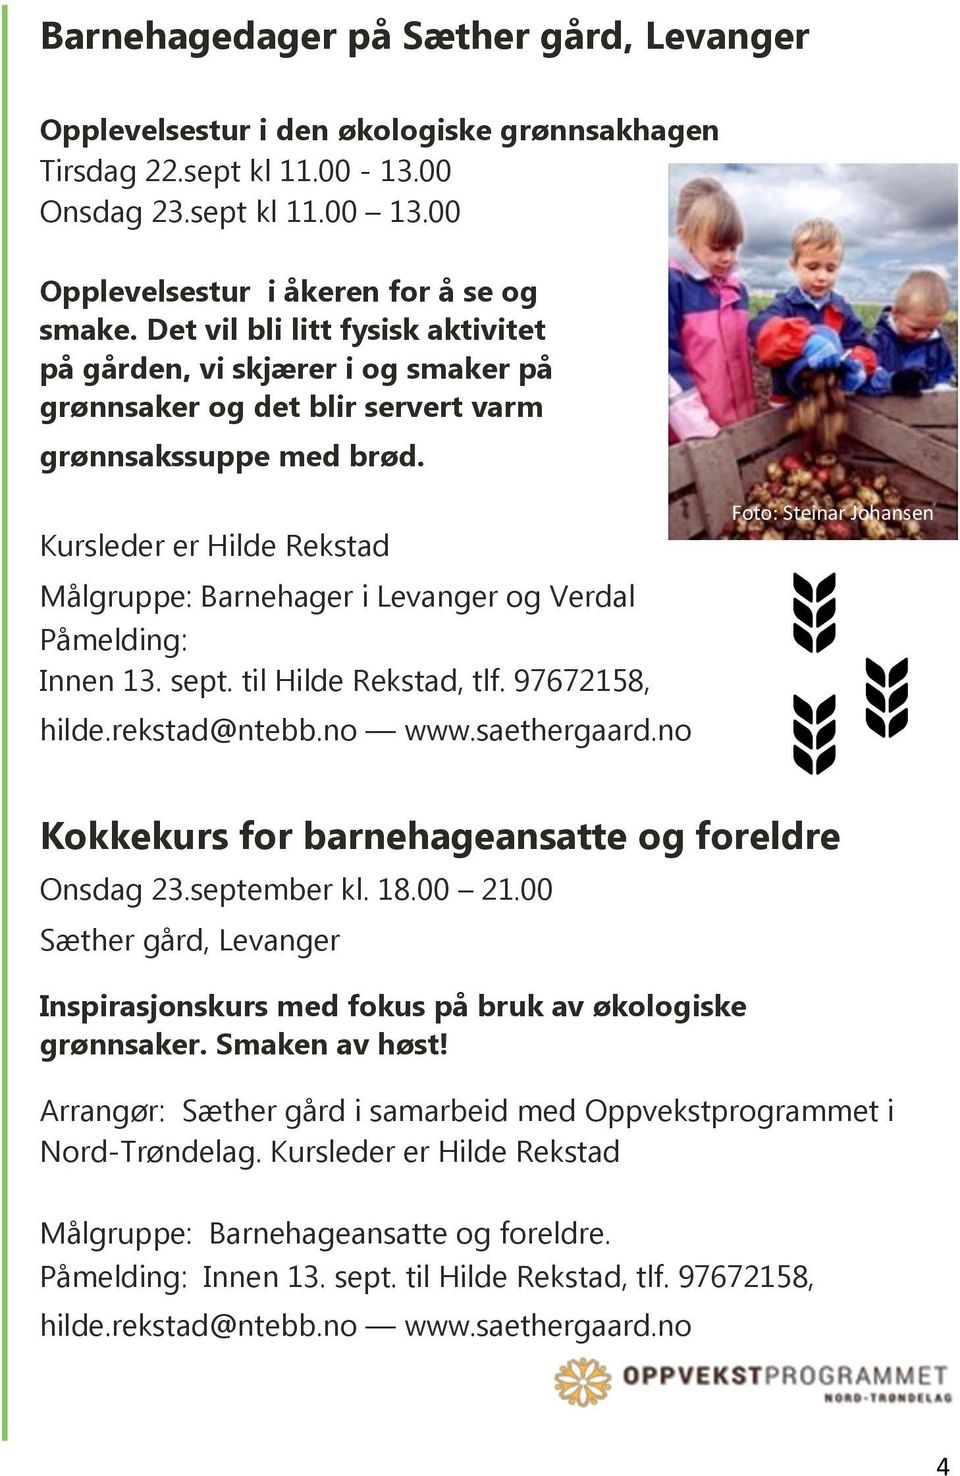 Kursleder er Hilde Rekstad Målgruppe: Barnehager i Levanger og Verdal Påmelding: Innen 13. sept. til Hilde Rekstad, tlf. 97672158, hilde.rekstad@ntebb.no www.saethergaard.